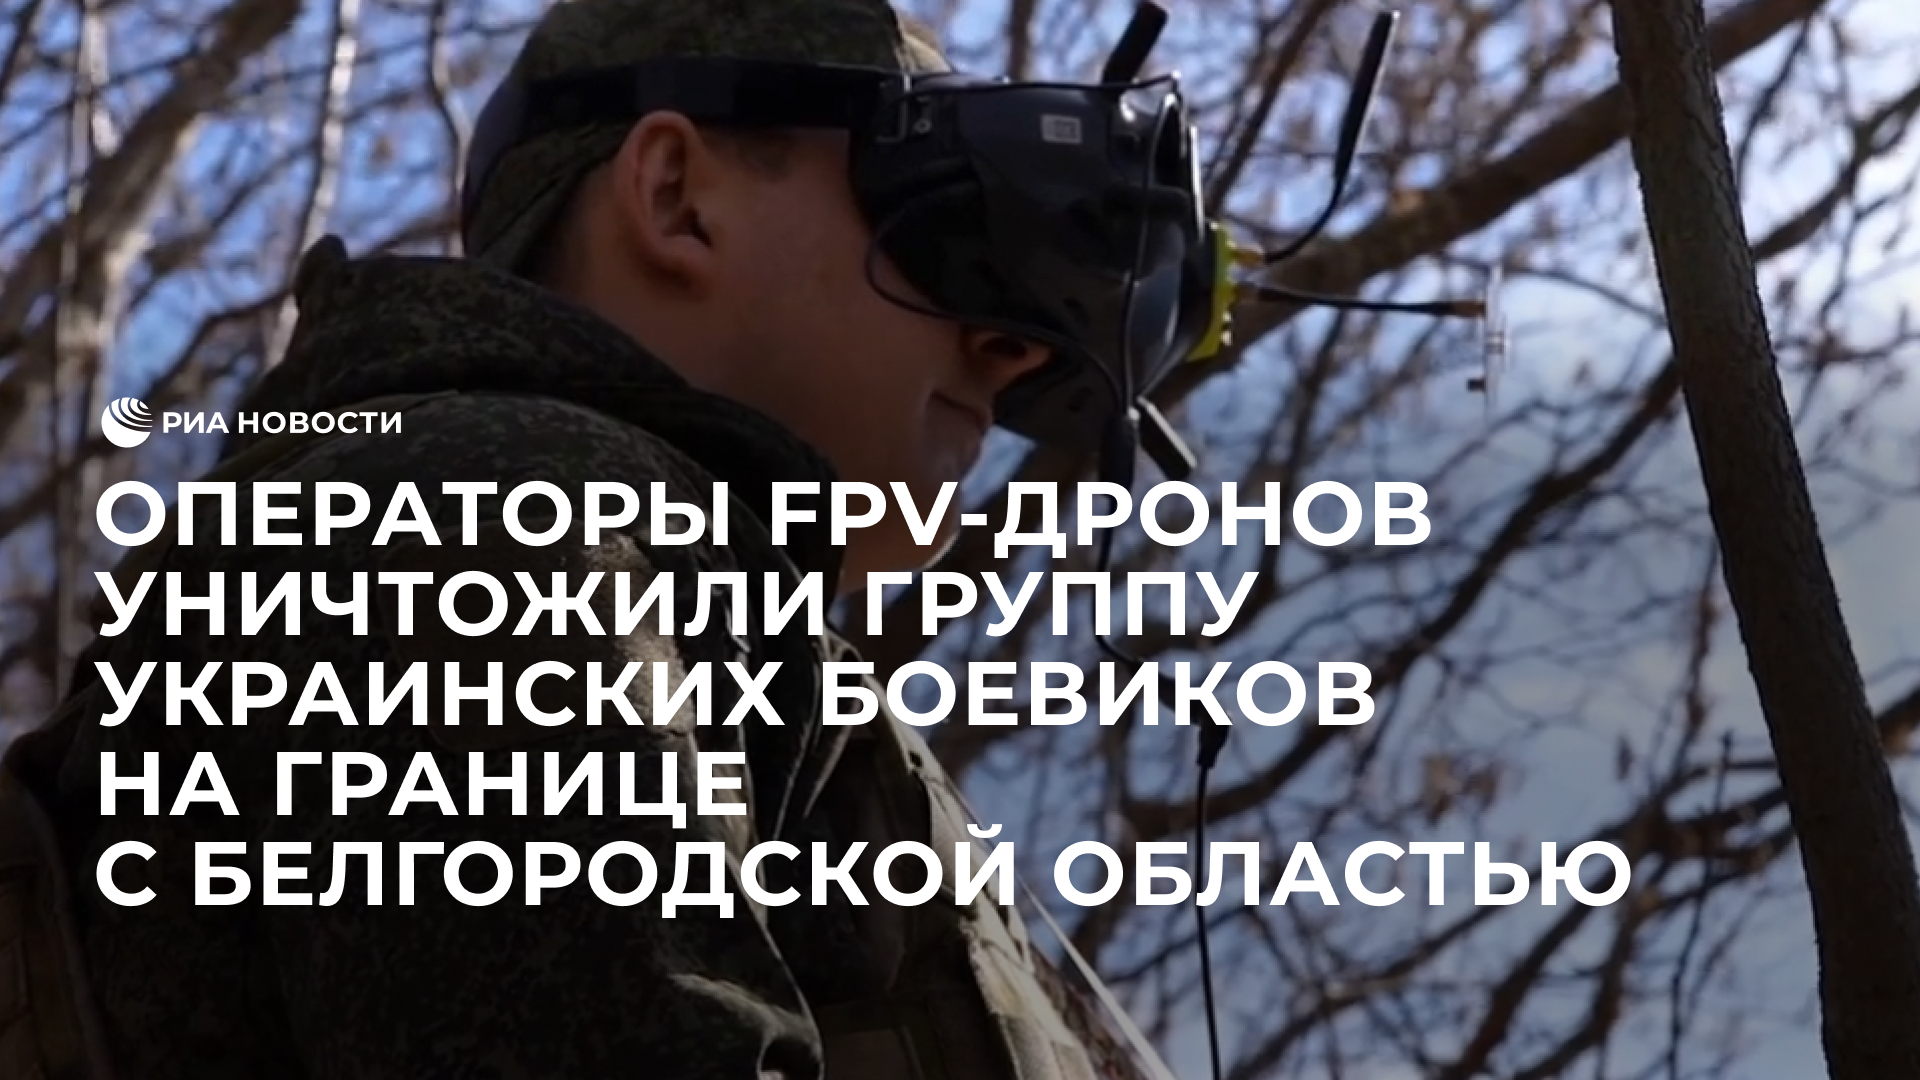 Операторы FPV-дронов уничтожили группу украинских боевиков на границе с Белгородской областью